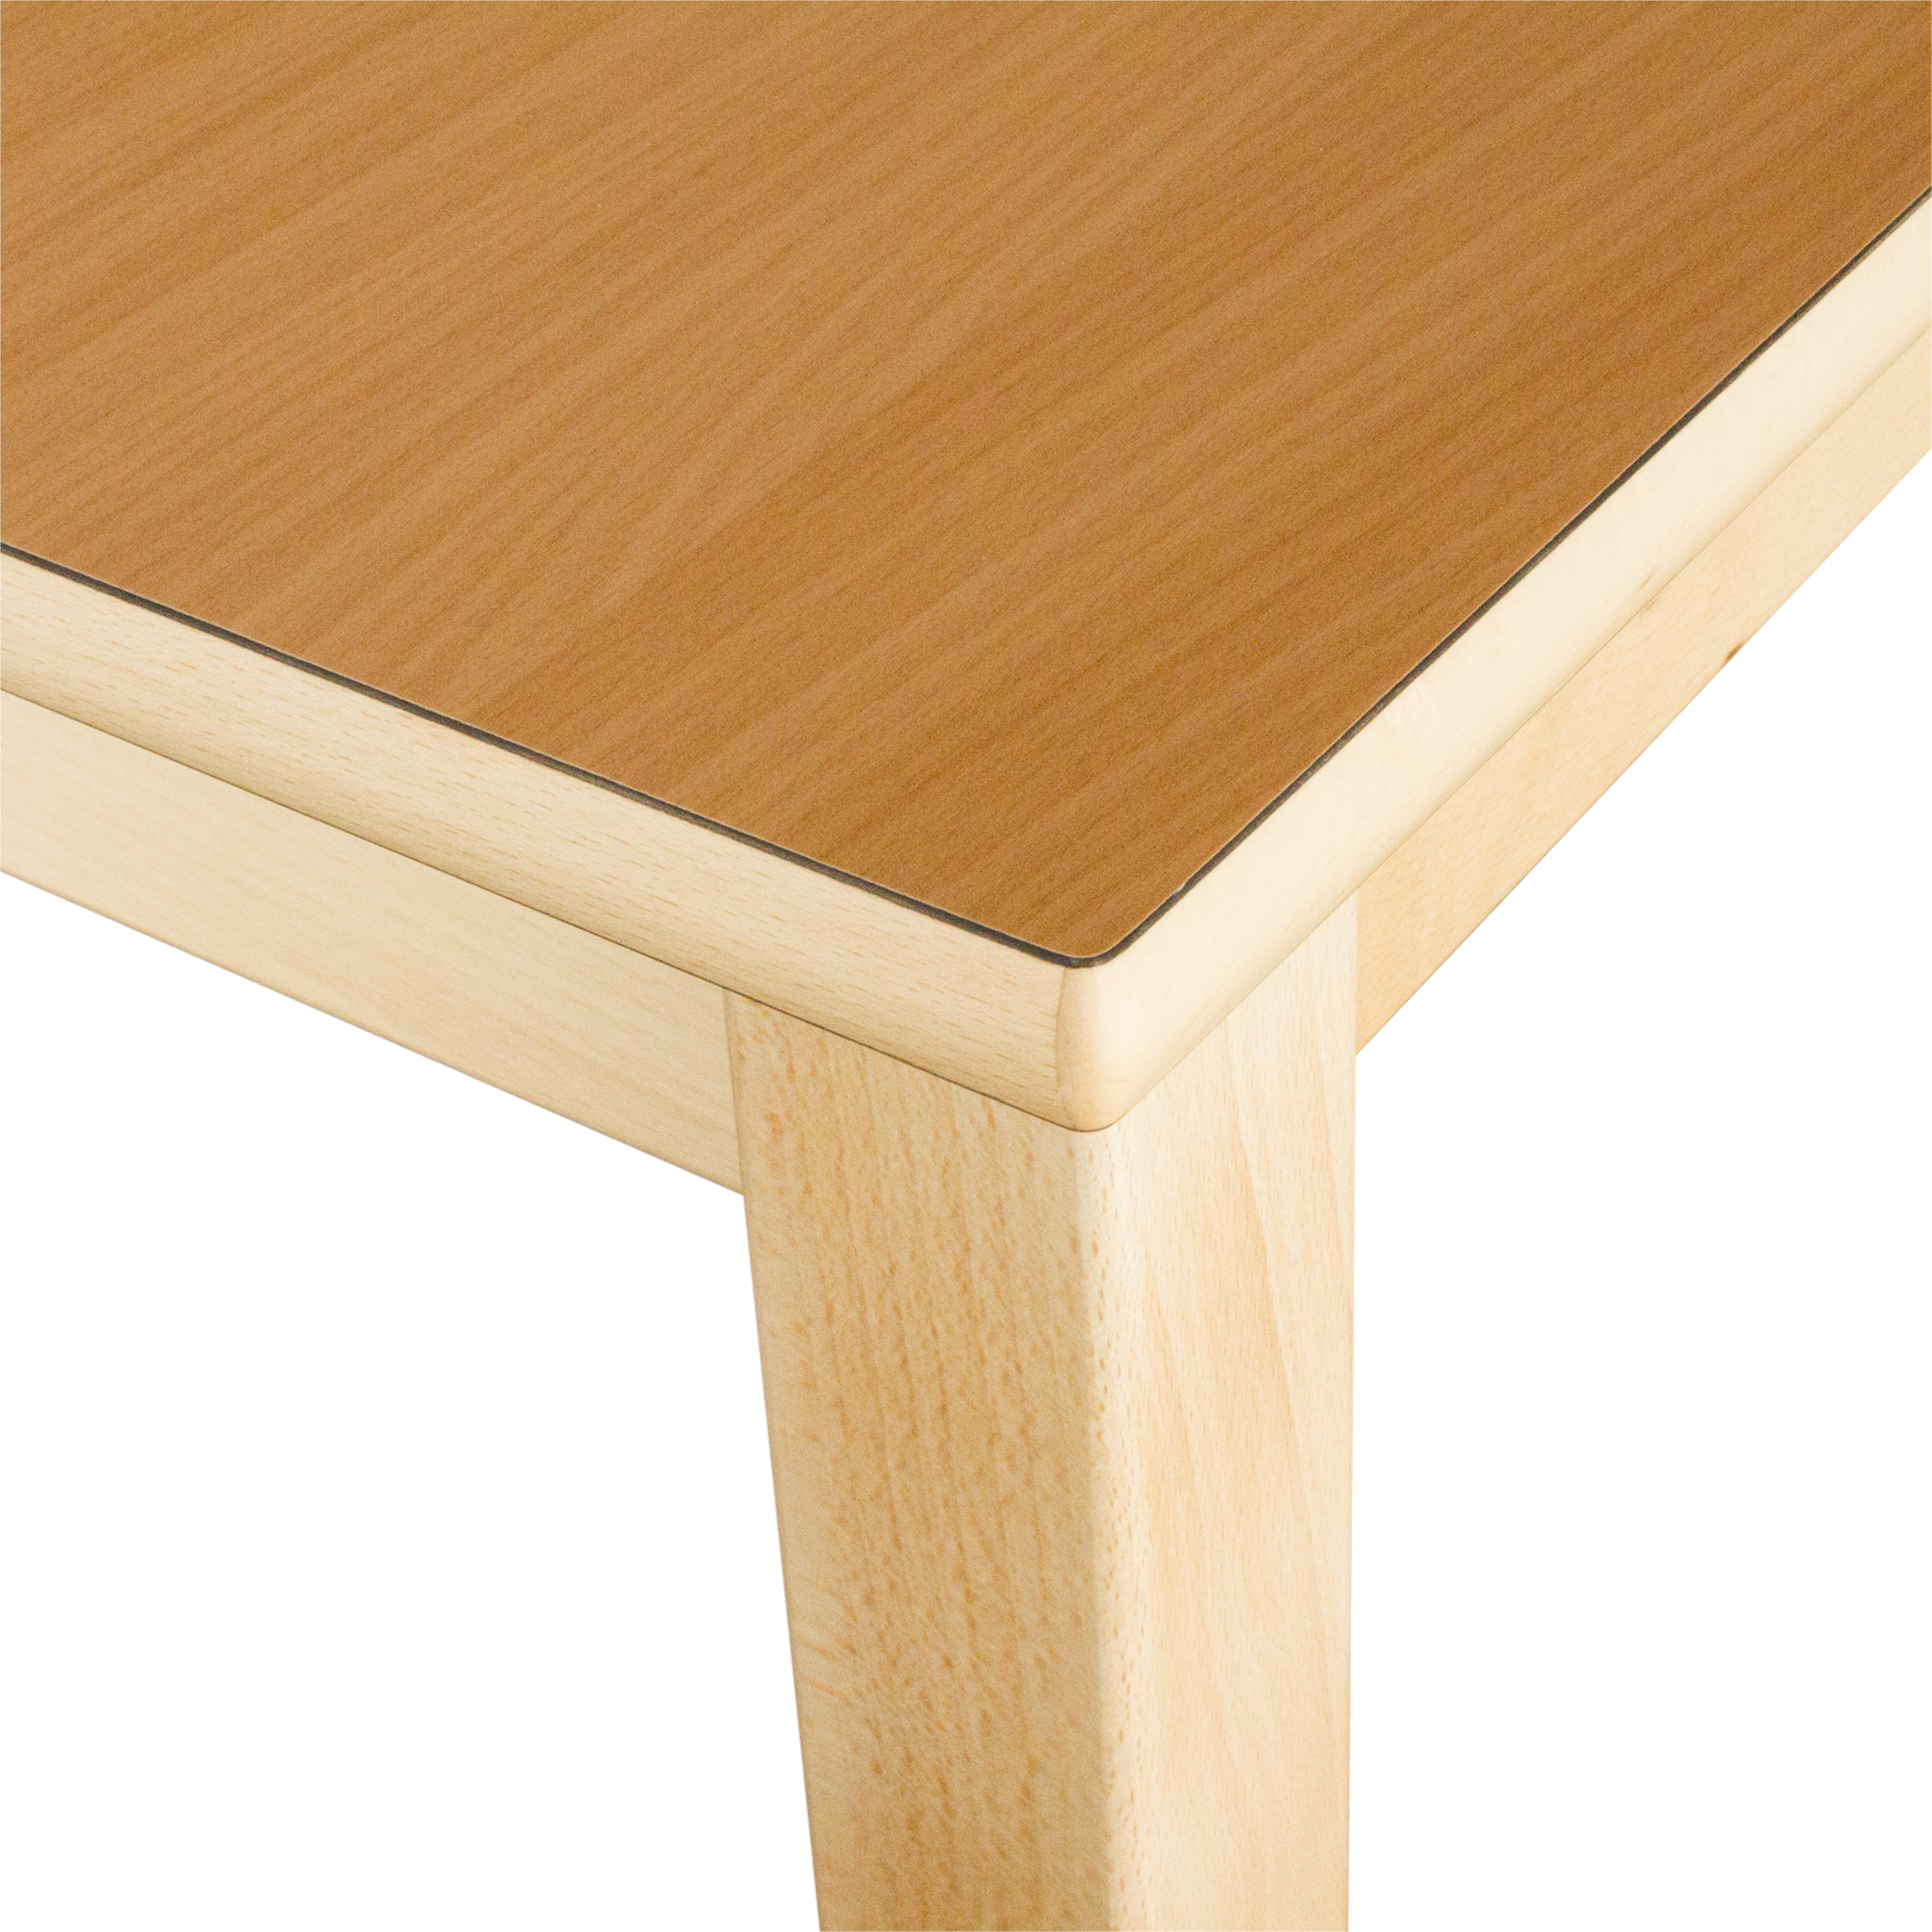 Halbkreis-Tisch, Durchmesser 120 cm, Tischhöhe 52 cm